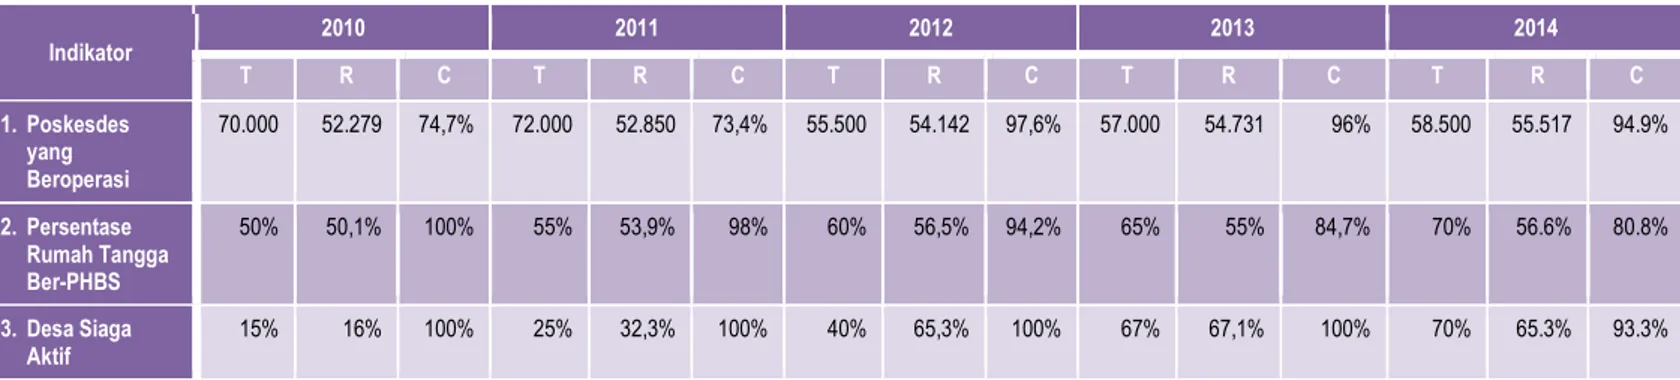 Tabel 1.1. Target dan Capaian Indikator 2010-2014 